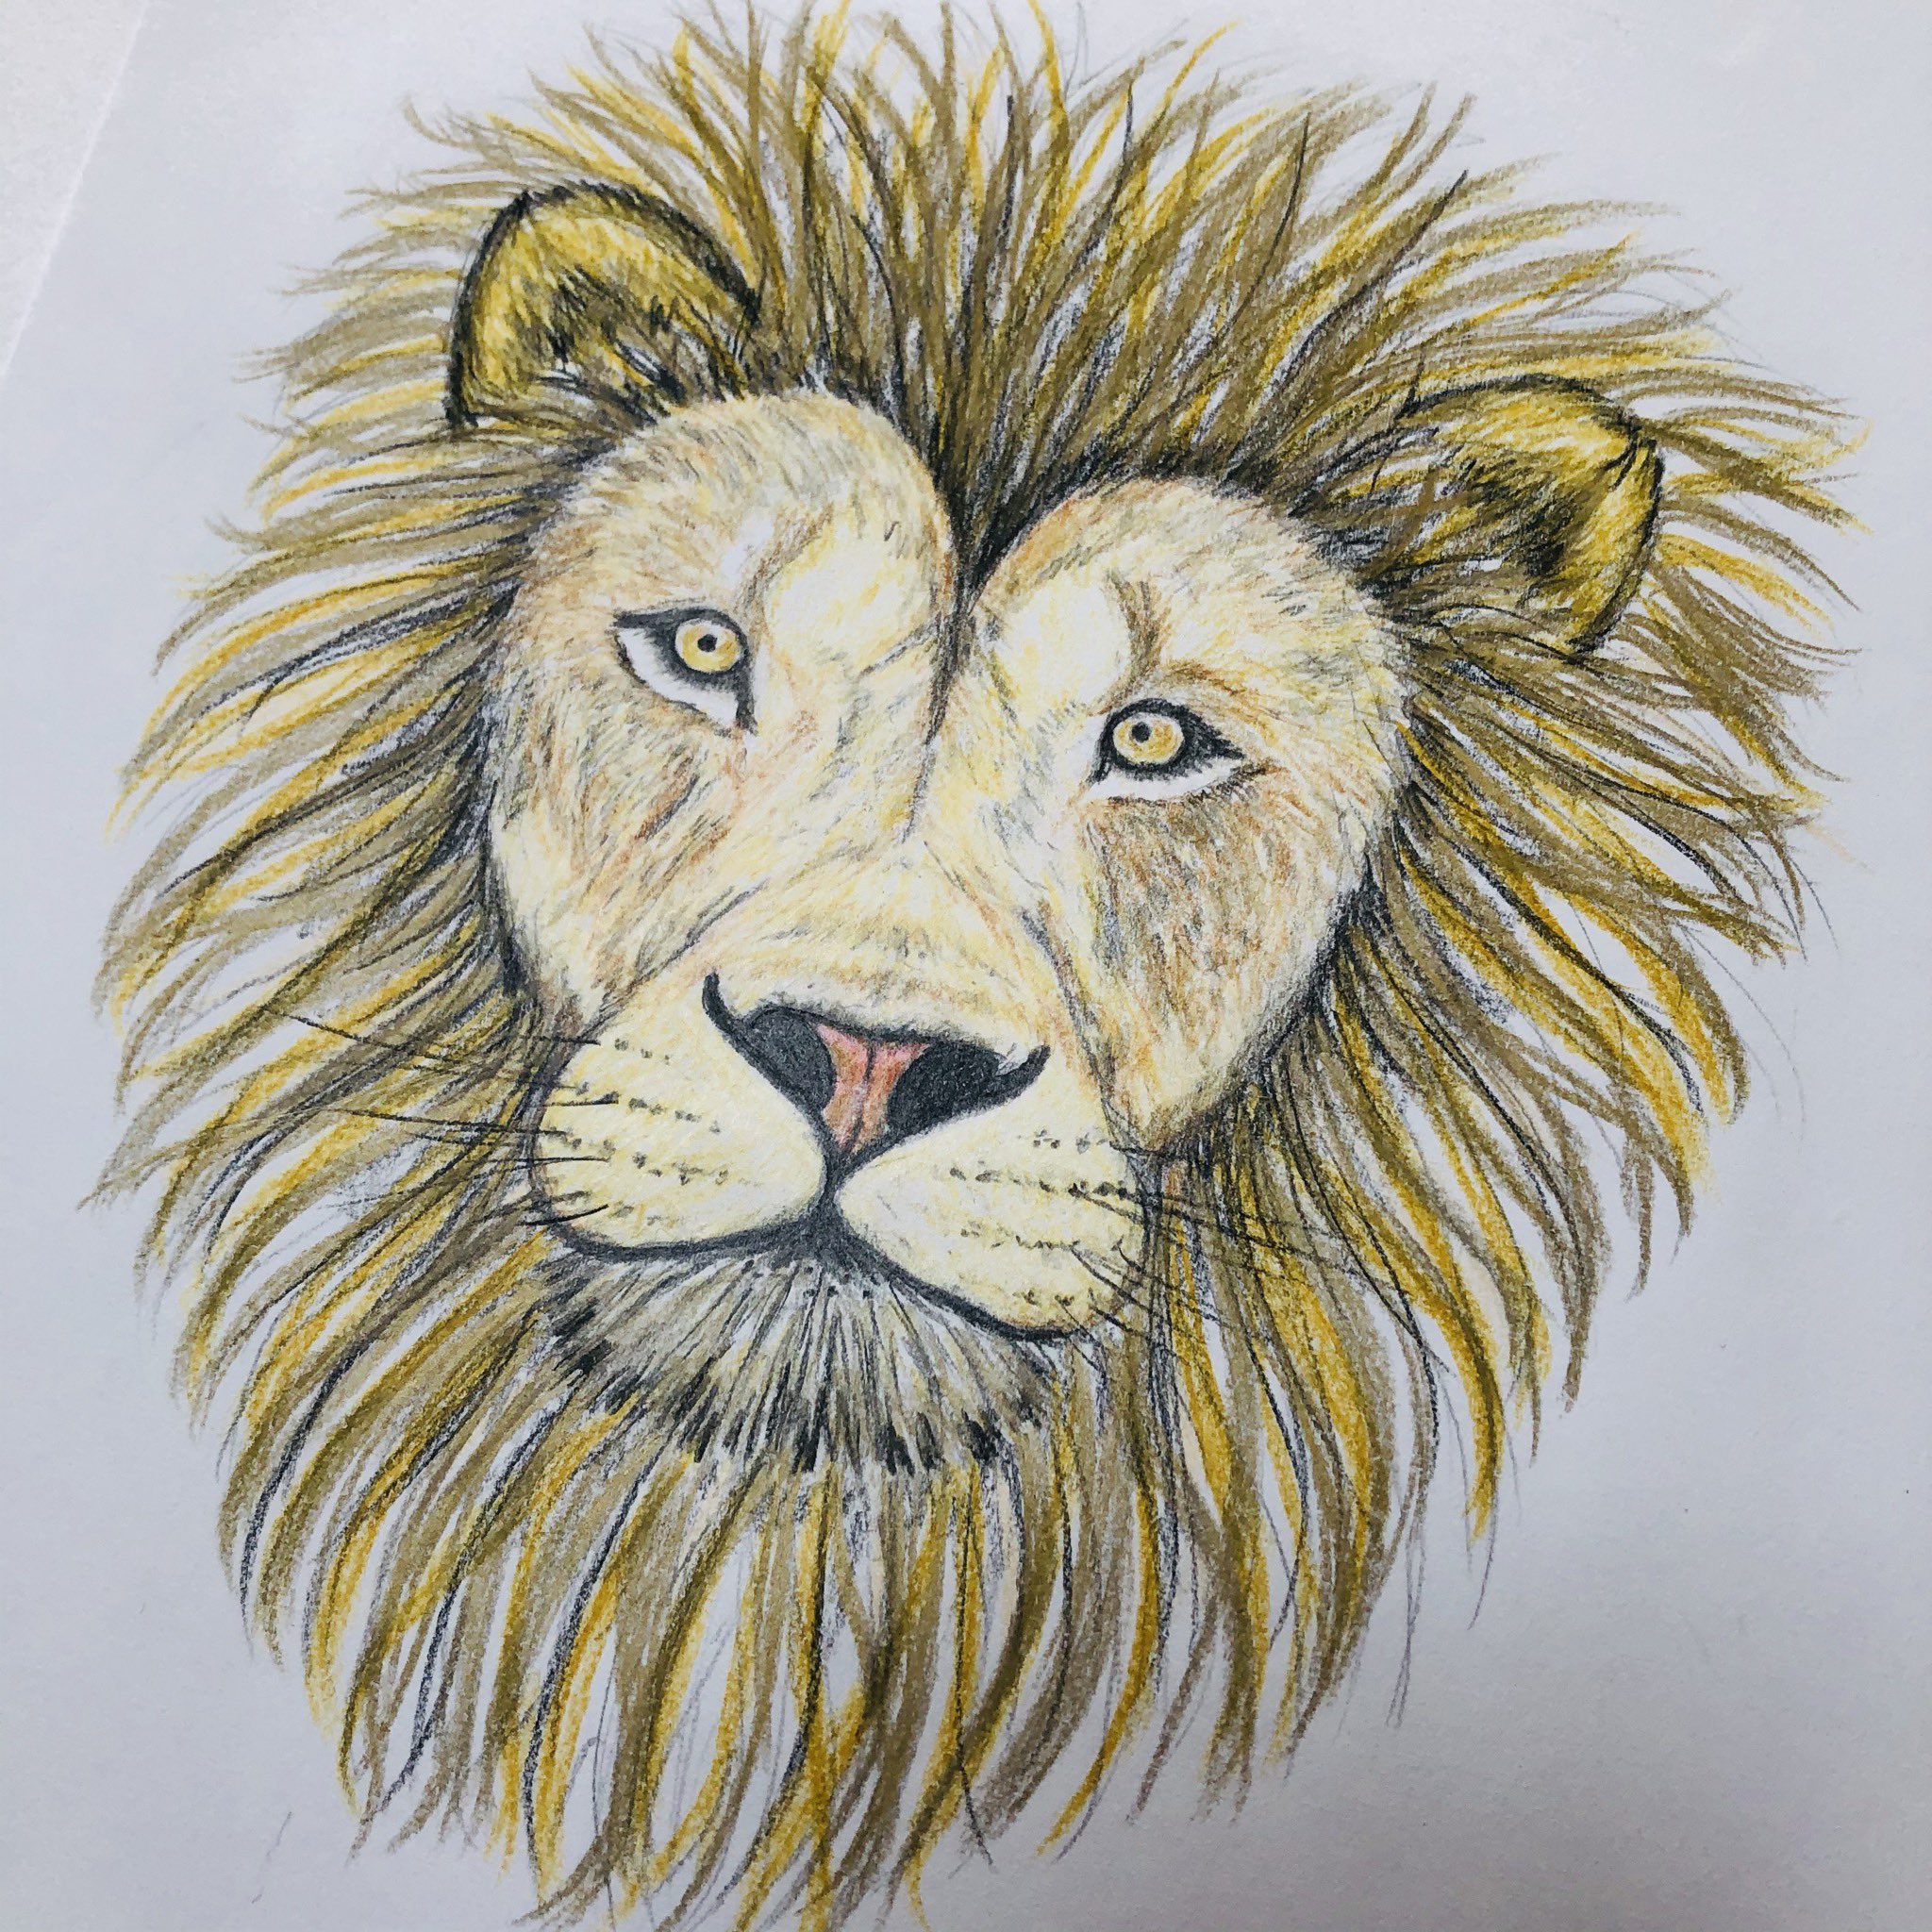 あさみ 久しぶりに ライオン イラスト 絵 色鉛筆画 ライオンイラスト ライオン 絵描きさんと繋がりたい T Co Ghdne3ppbn Twitter